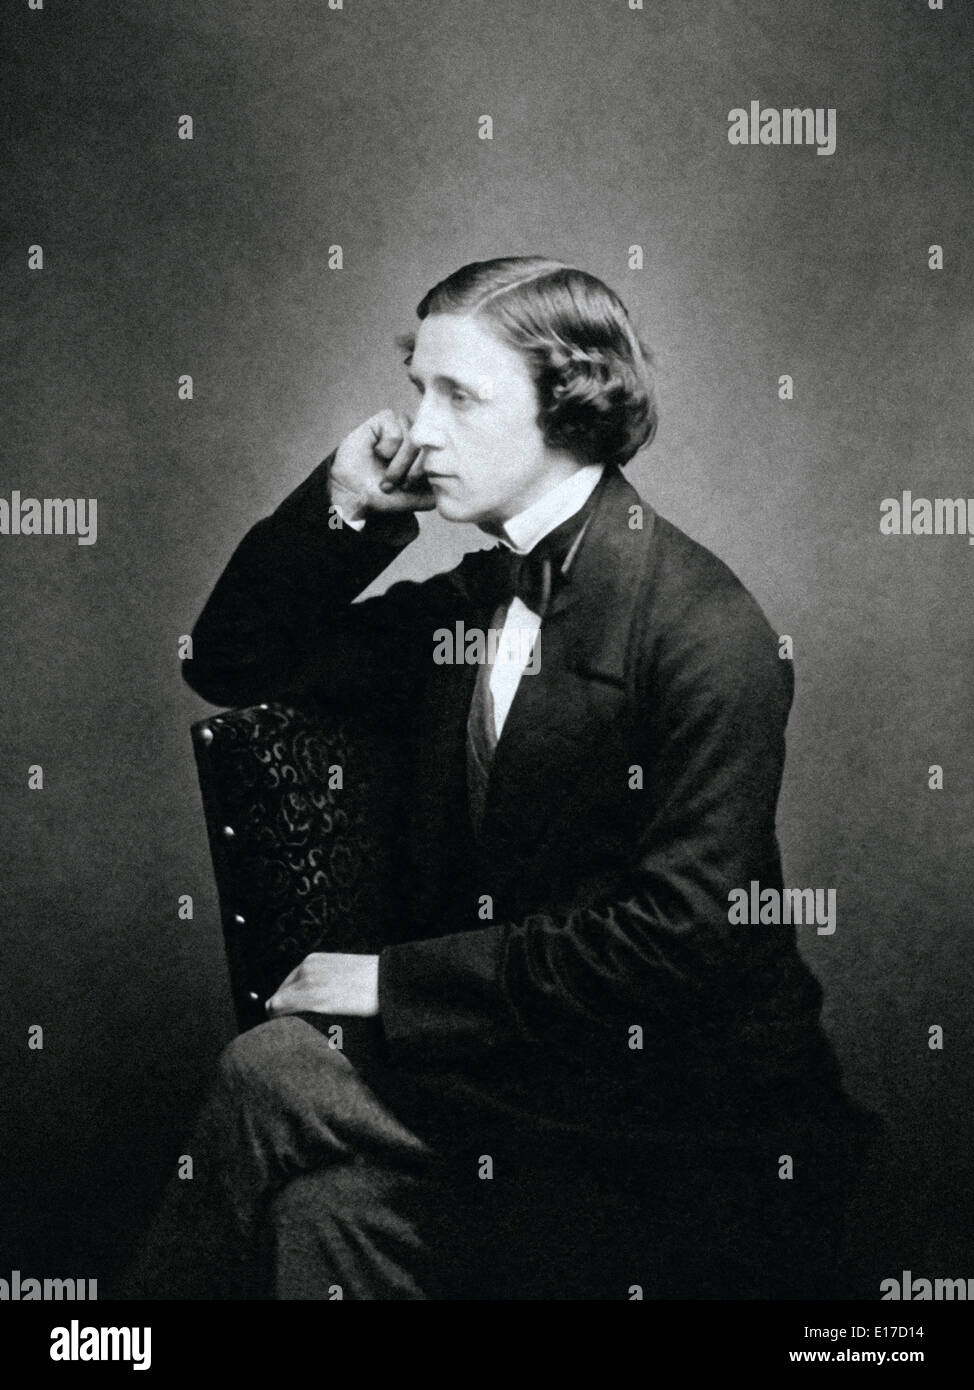 Lewis Carroll (1832-1898), englischer Schriftsteller, Mathematiker und Fotograf. Charles Lutwidge Dodgson geboren, nahm er den Künstlernamen Lewis Carroll veröffentlichen Alices Abenteuer im Wunderland, 1865. Stockfoto